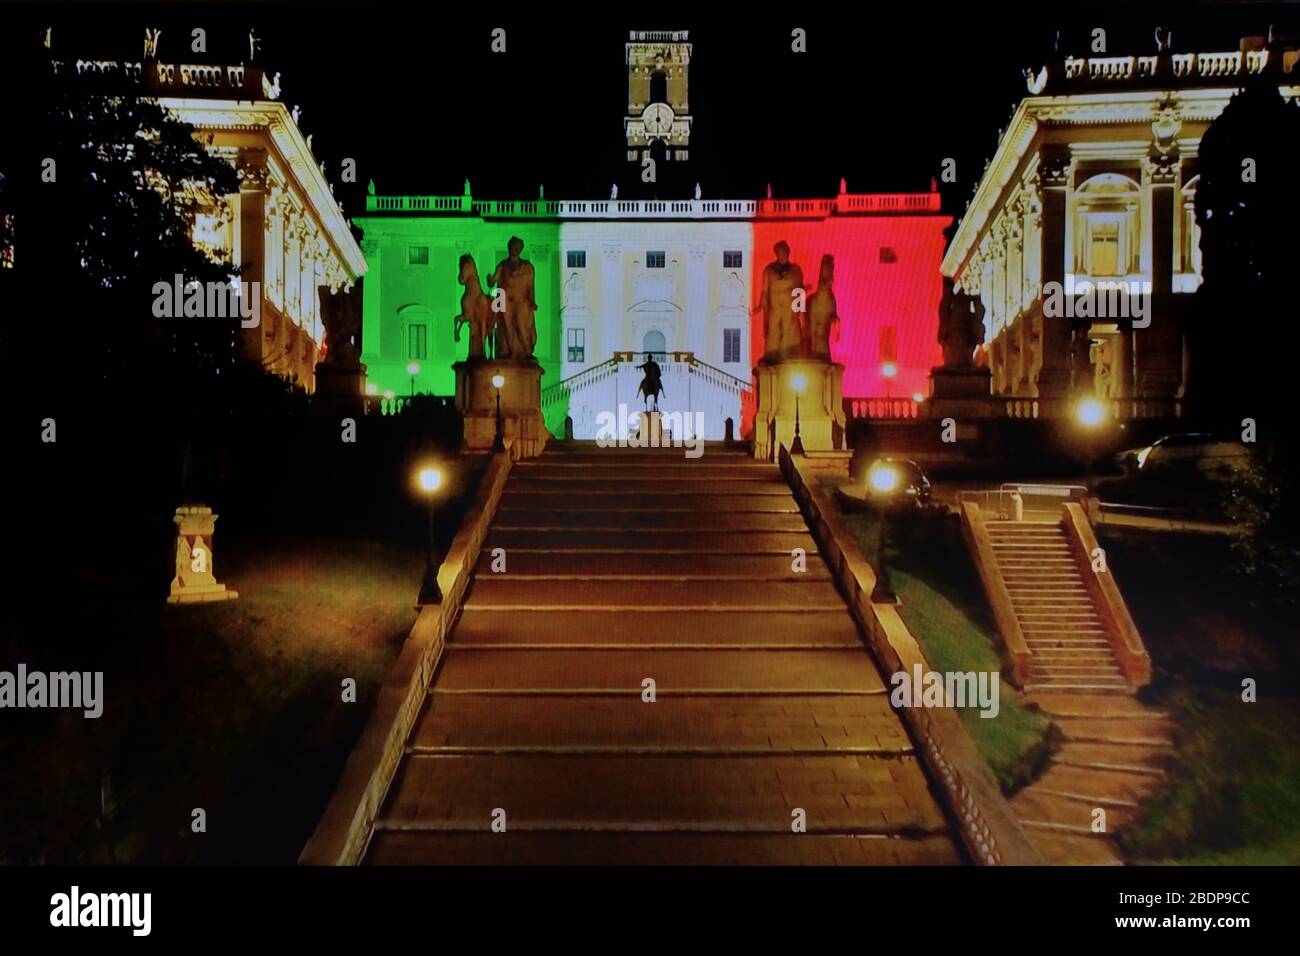 Rome - Italie, vue nocturne de la place Campidoglio (Palazzo senatorio peint avec la lumière tricolore), déserté pendant le verrouillage imposé par le gouvernement pandémique coronavirus avril 2020 Banque D'Images